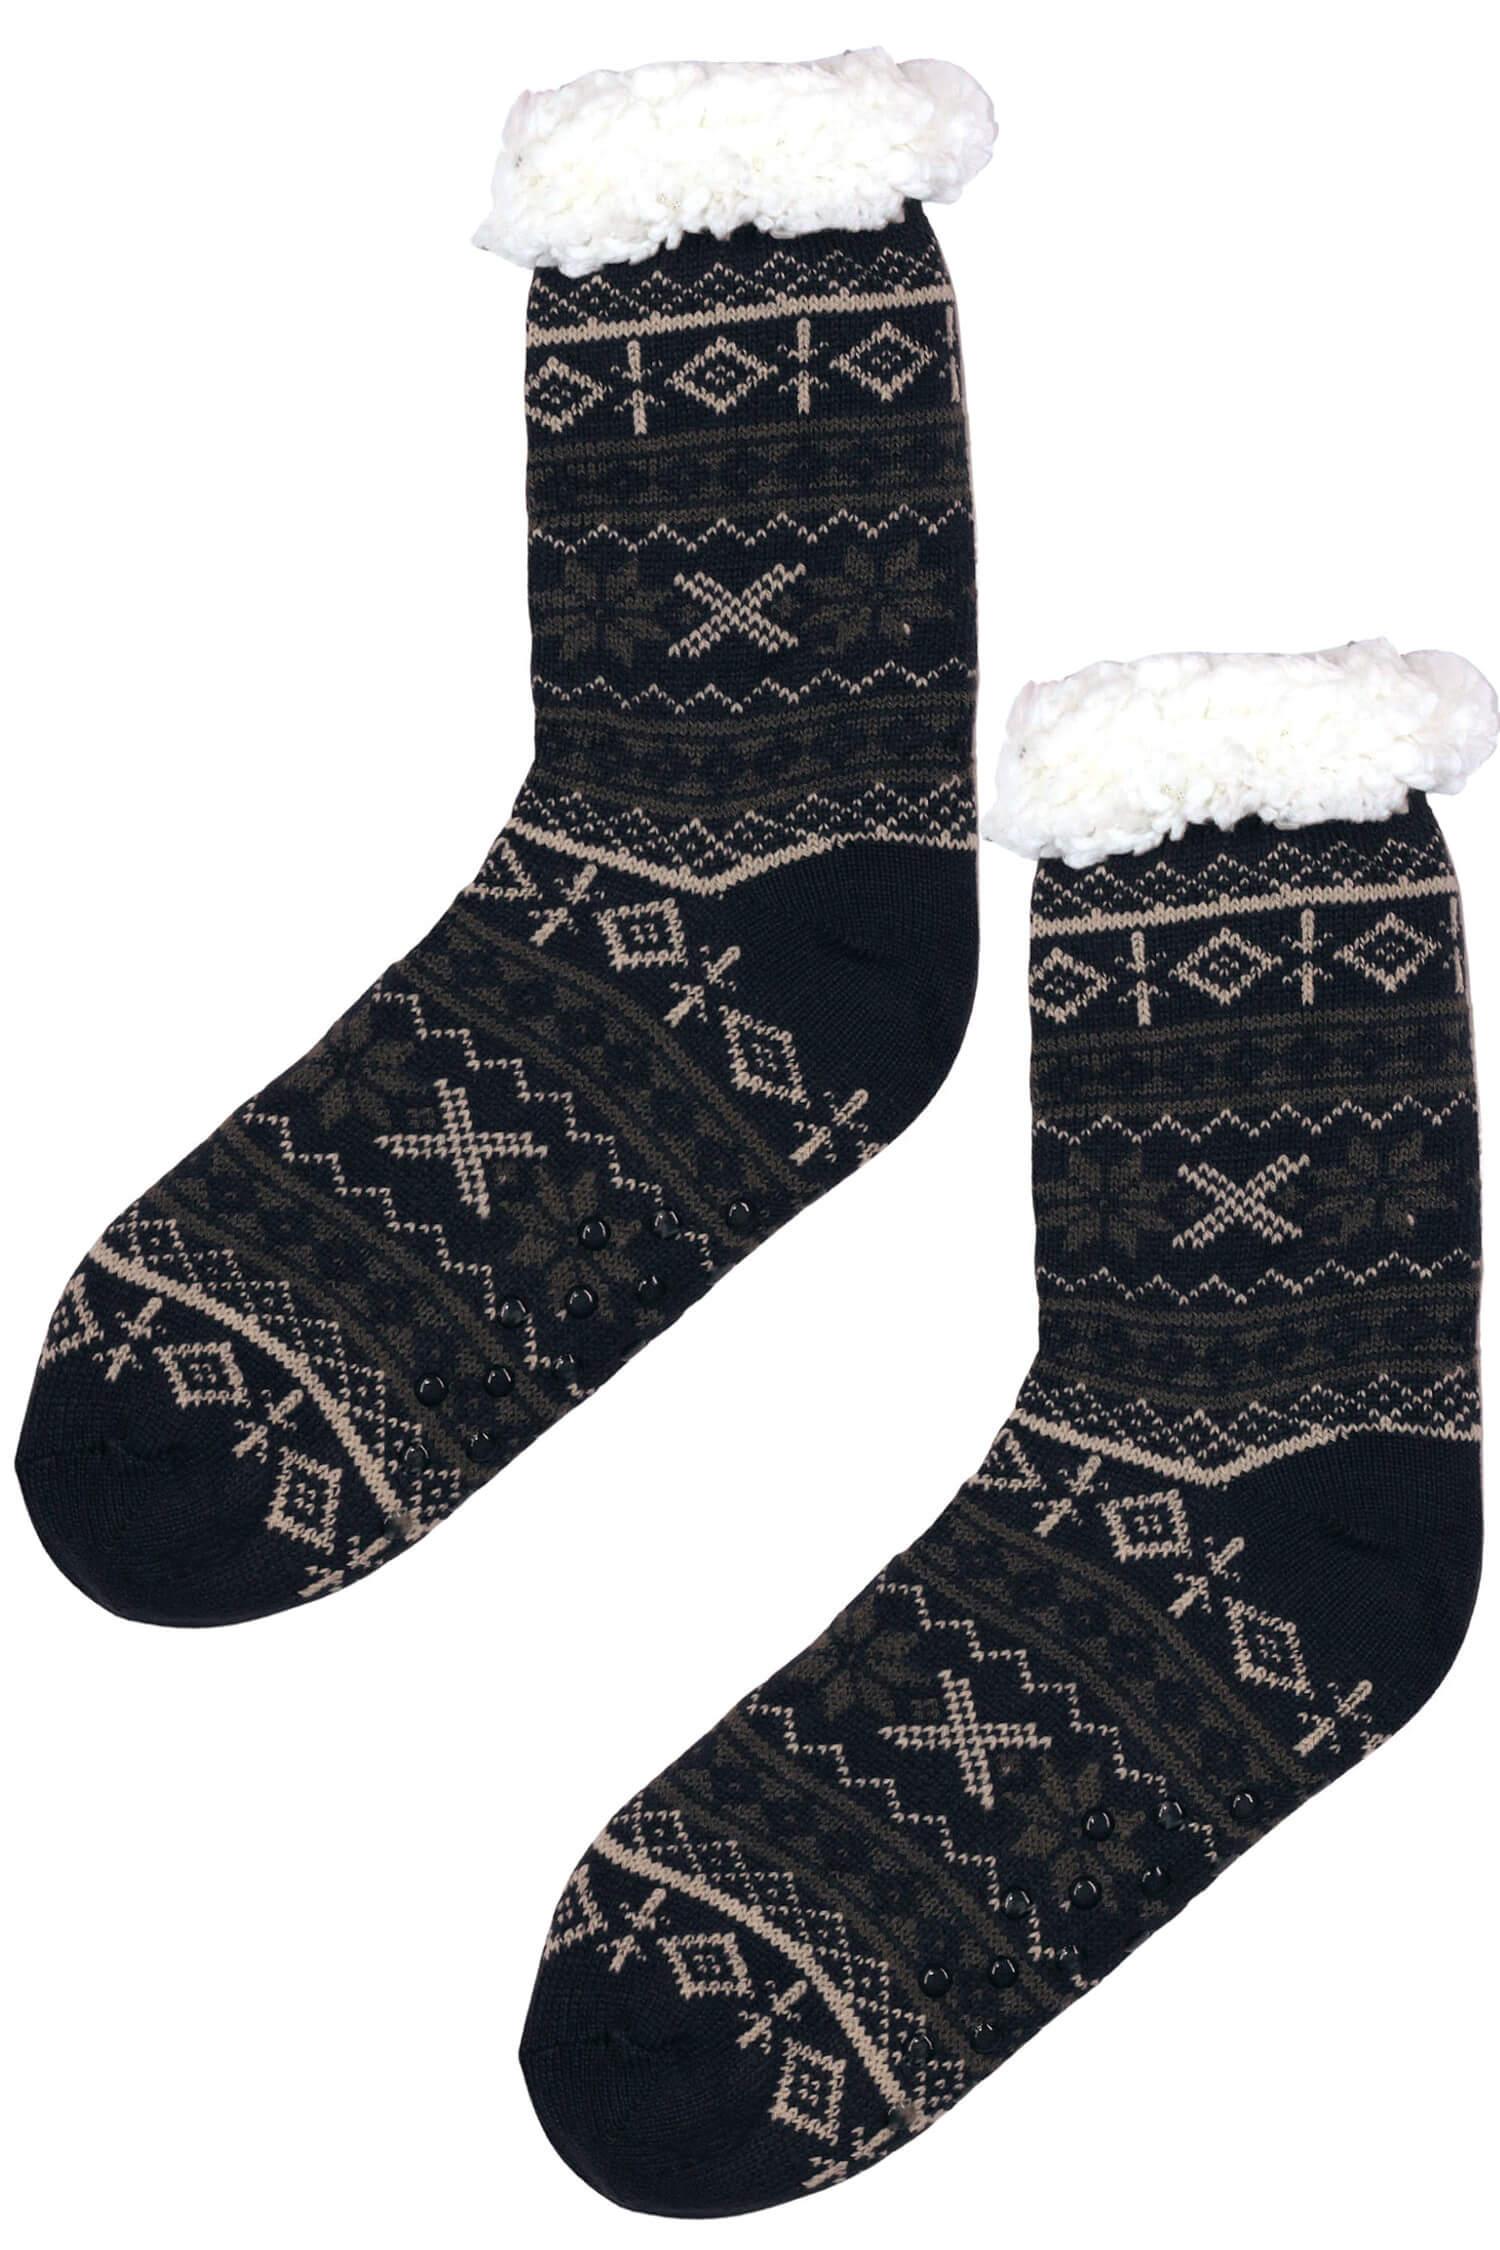 Snowy blue huňaté ponožky beránek MC 113 39-42 tmavě modrá